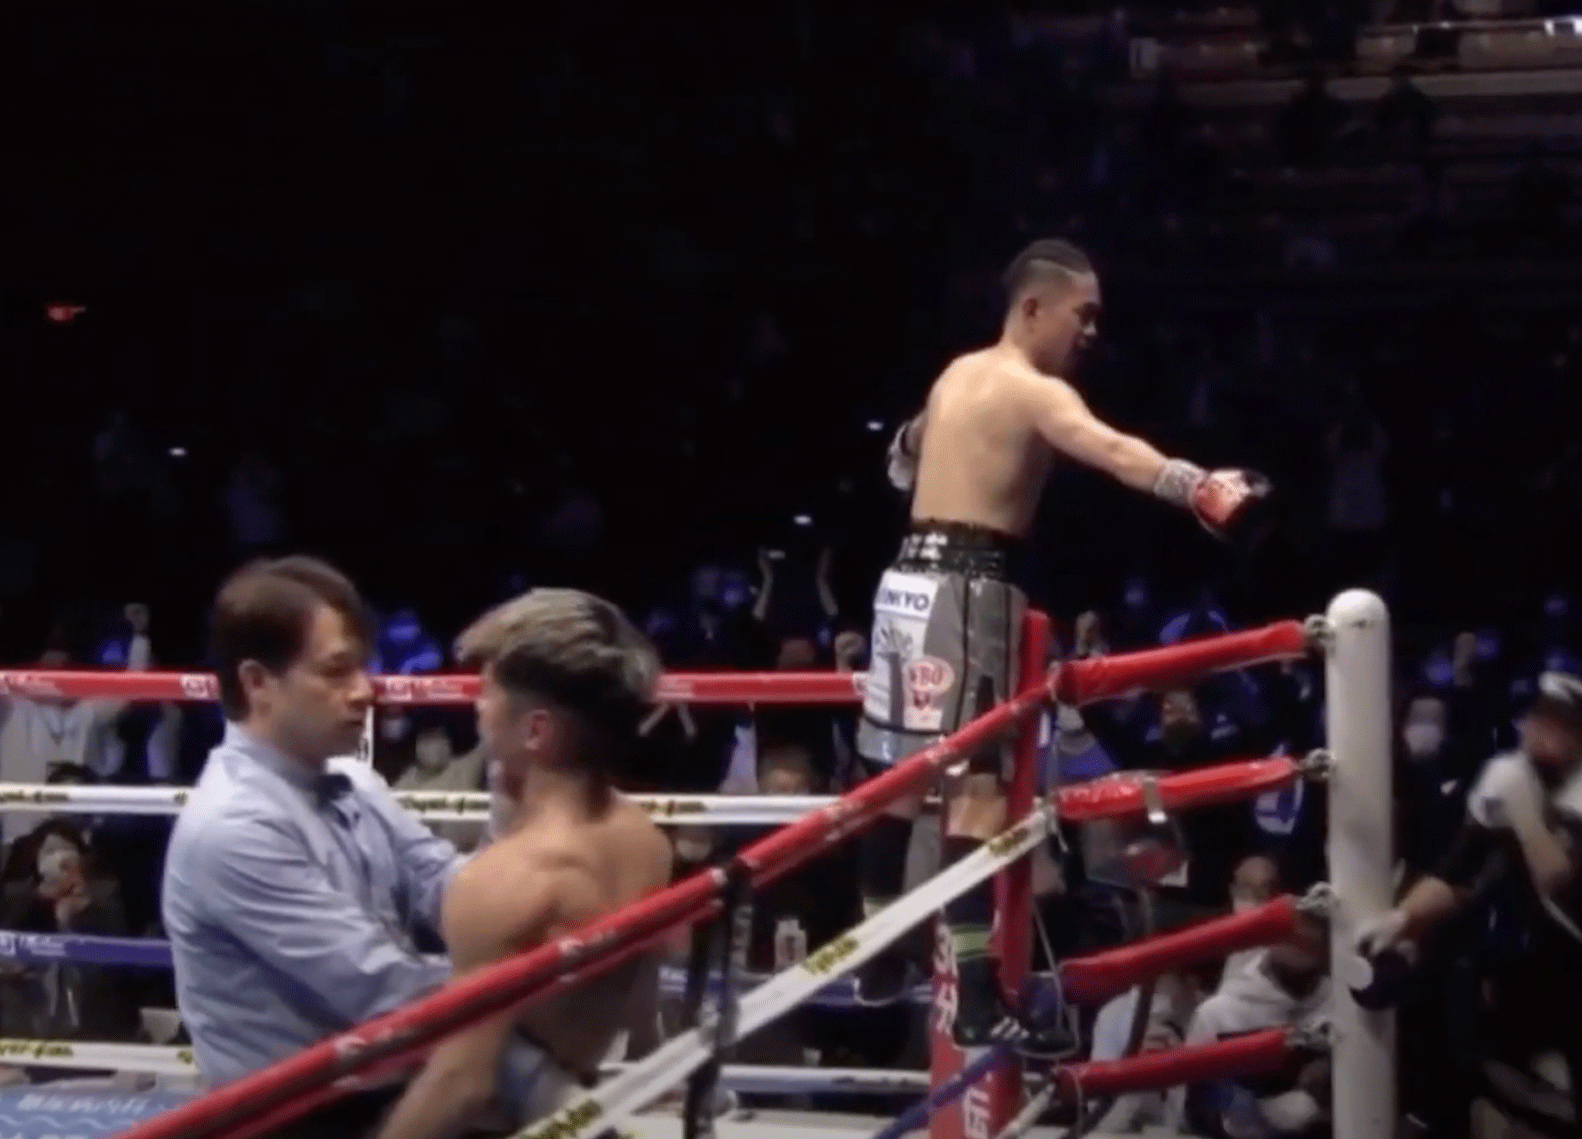 Zware straf wacht voor bokskampioen, titel in het geding (video)